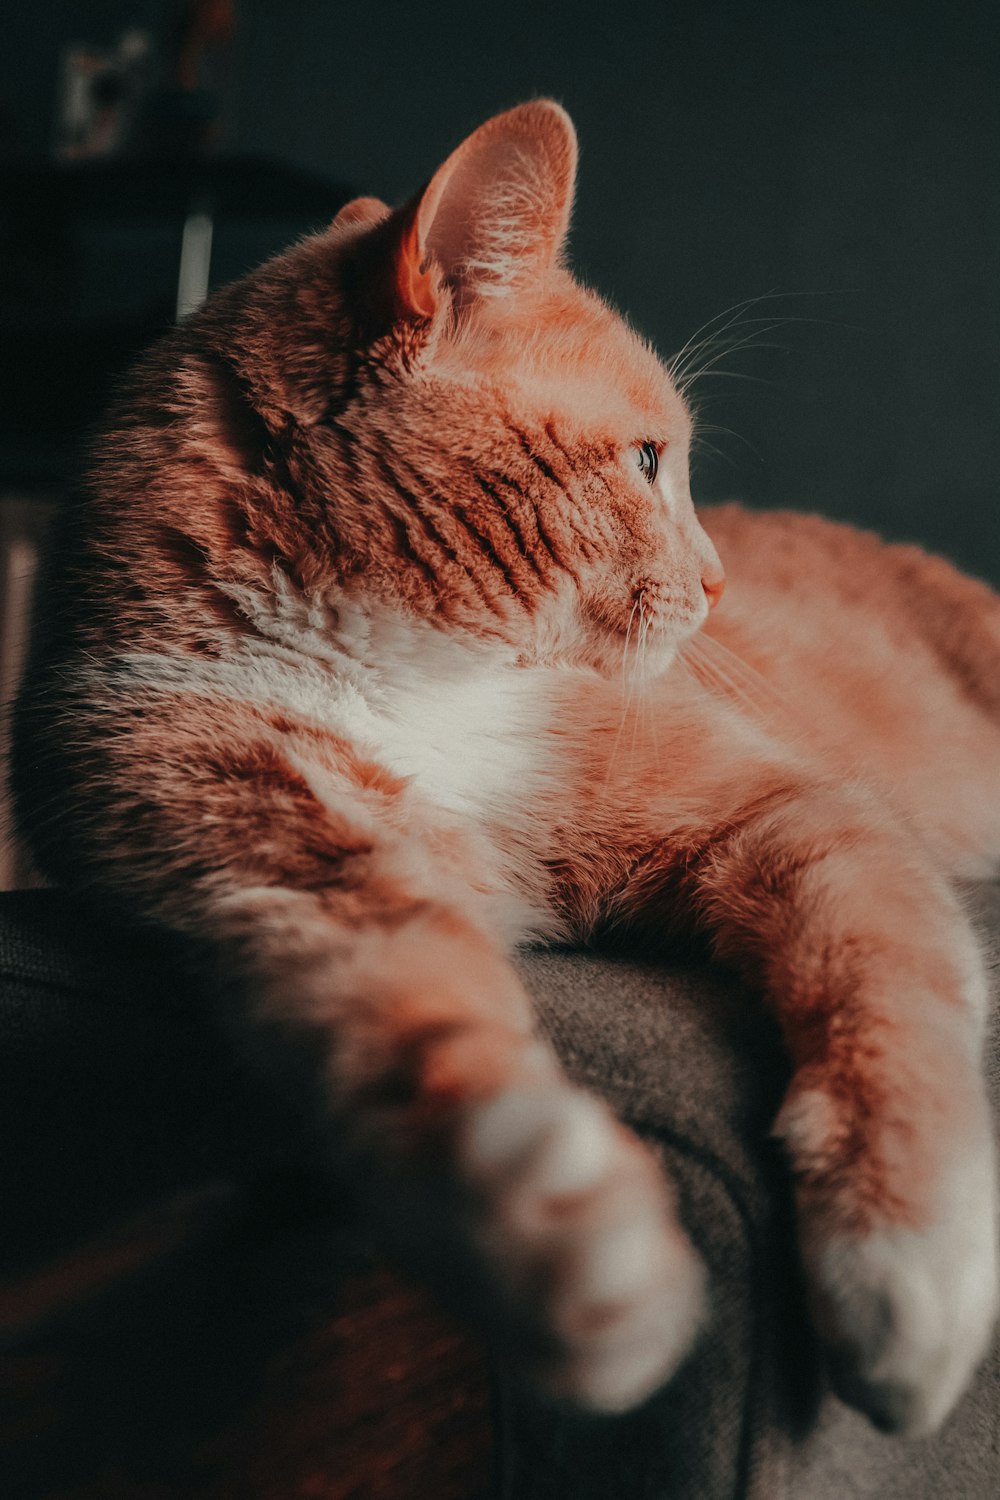 회색 소파에 누워있는 오렌지 고양이의 선택적 초점 사진